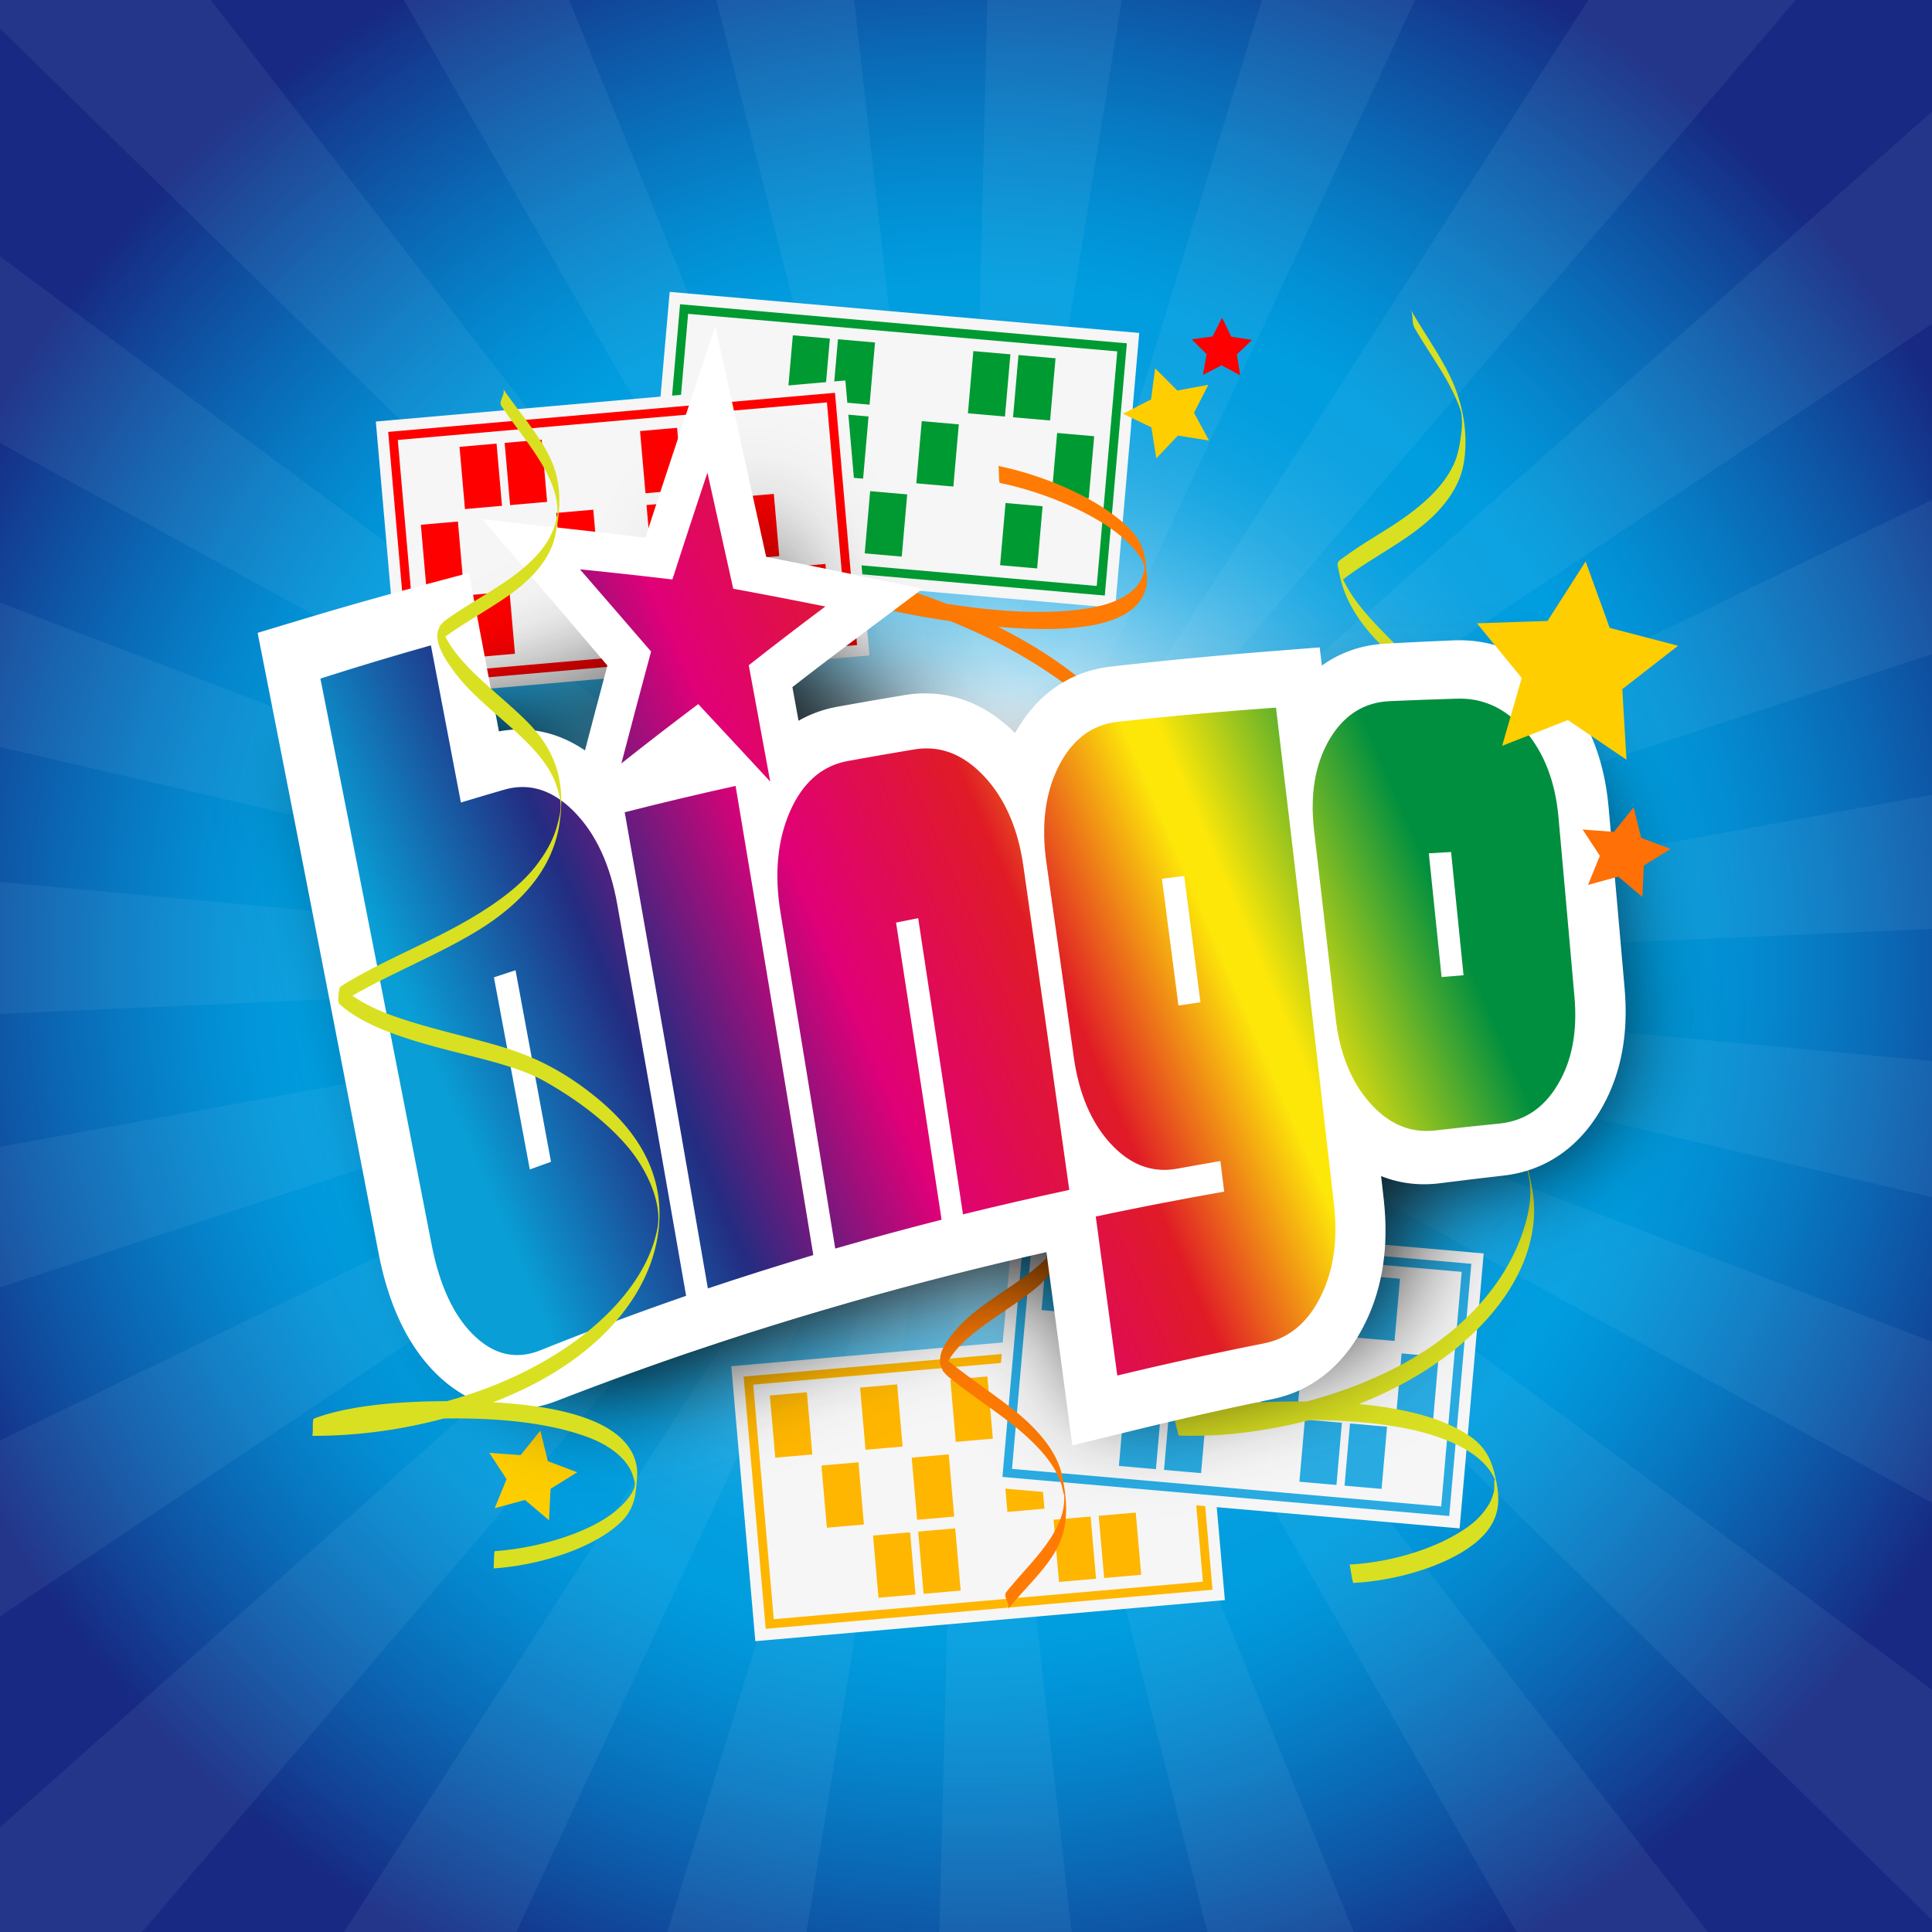 Ordet "Bingo" i en färgstark grafik